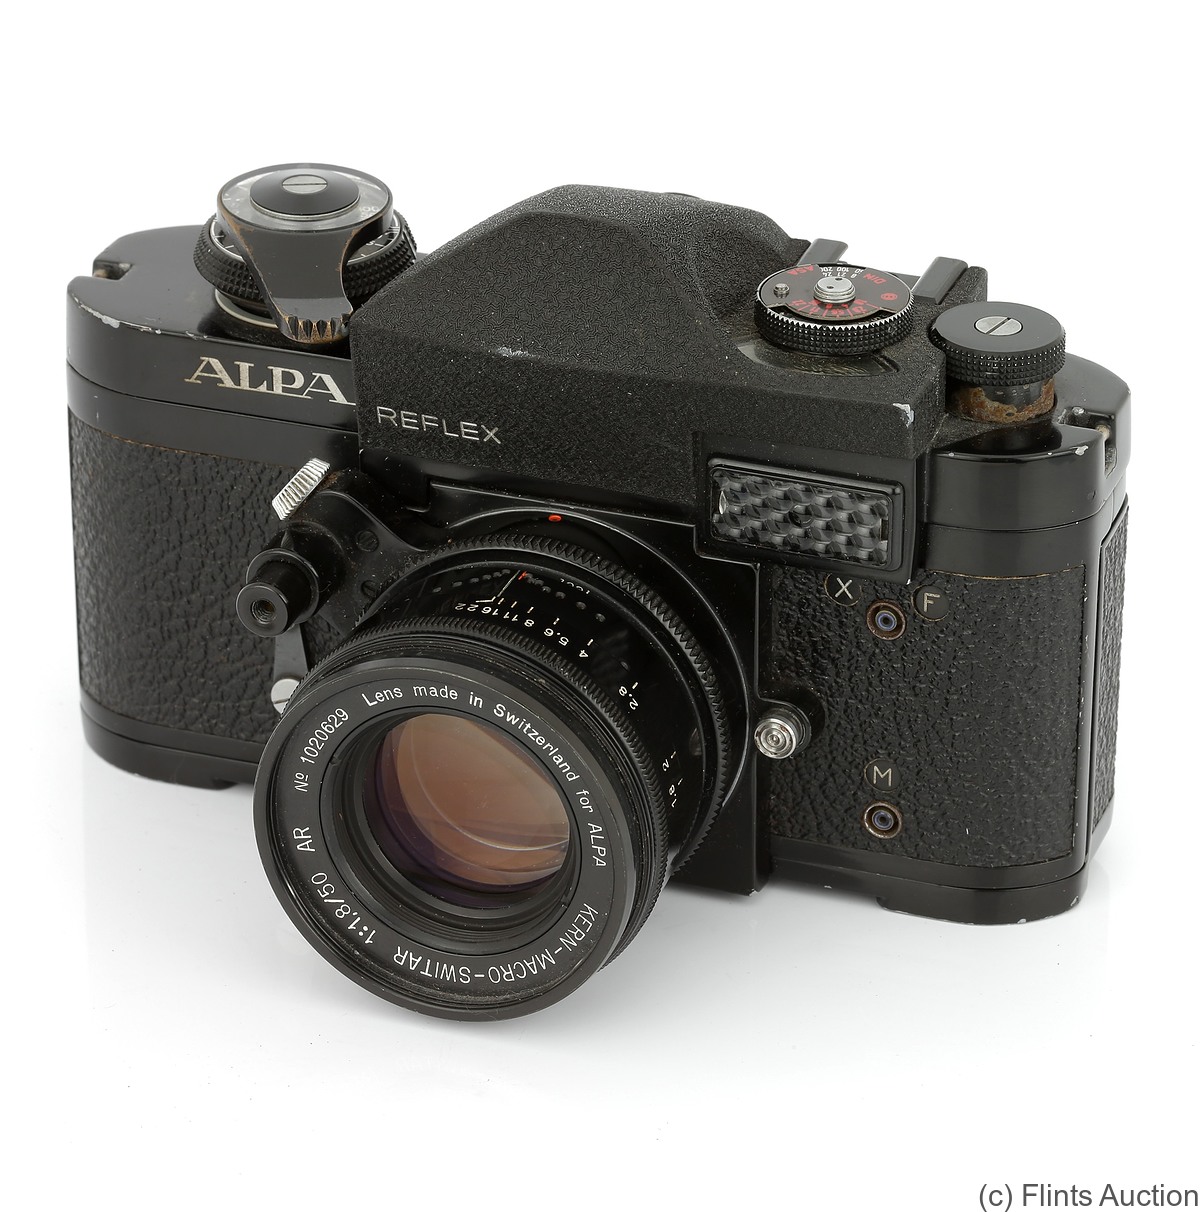 Pignons: Alpa 6c (black) camera